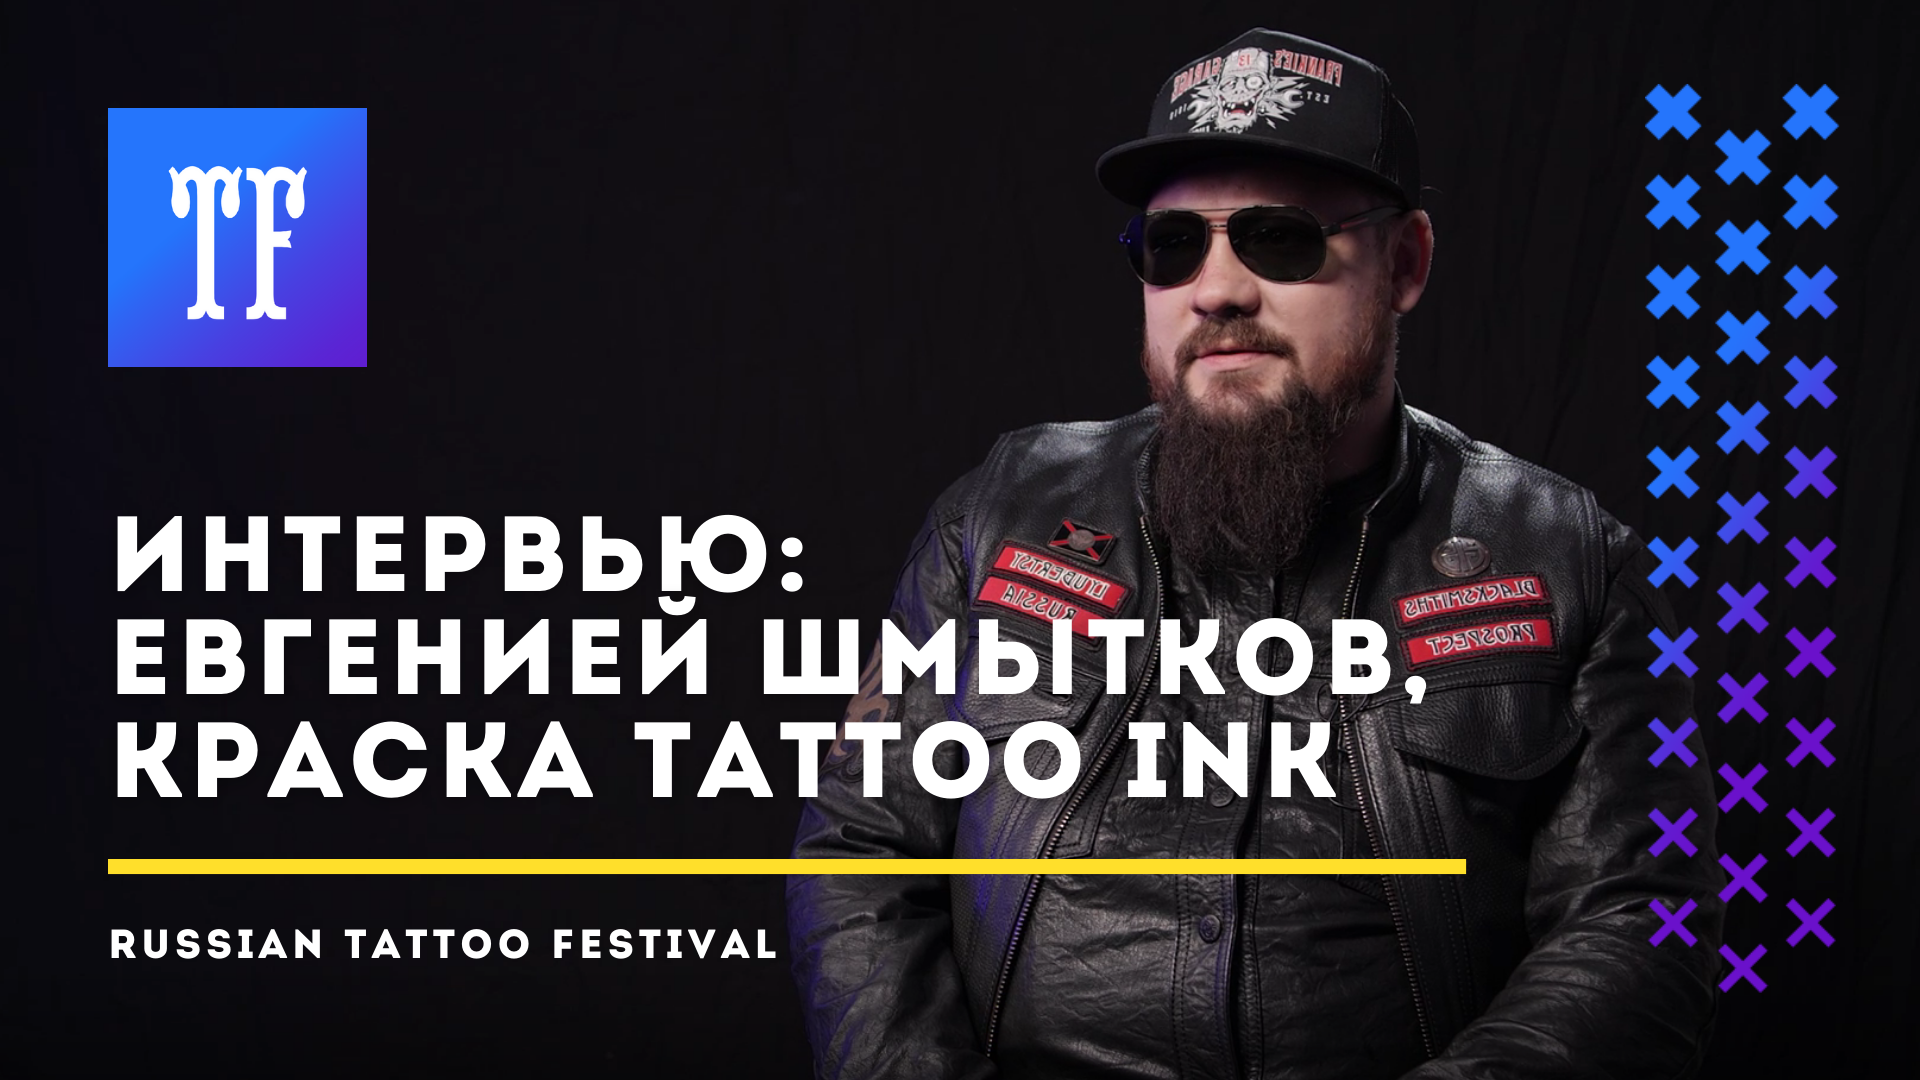 Интервью с Евгением Шмытковым, КРАСКА Tattoo Ink